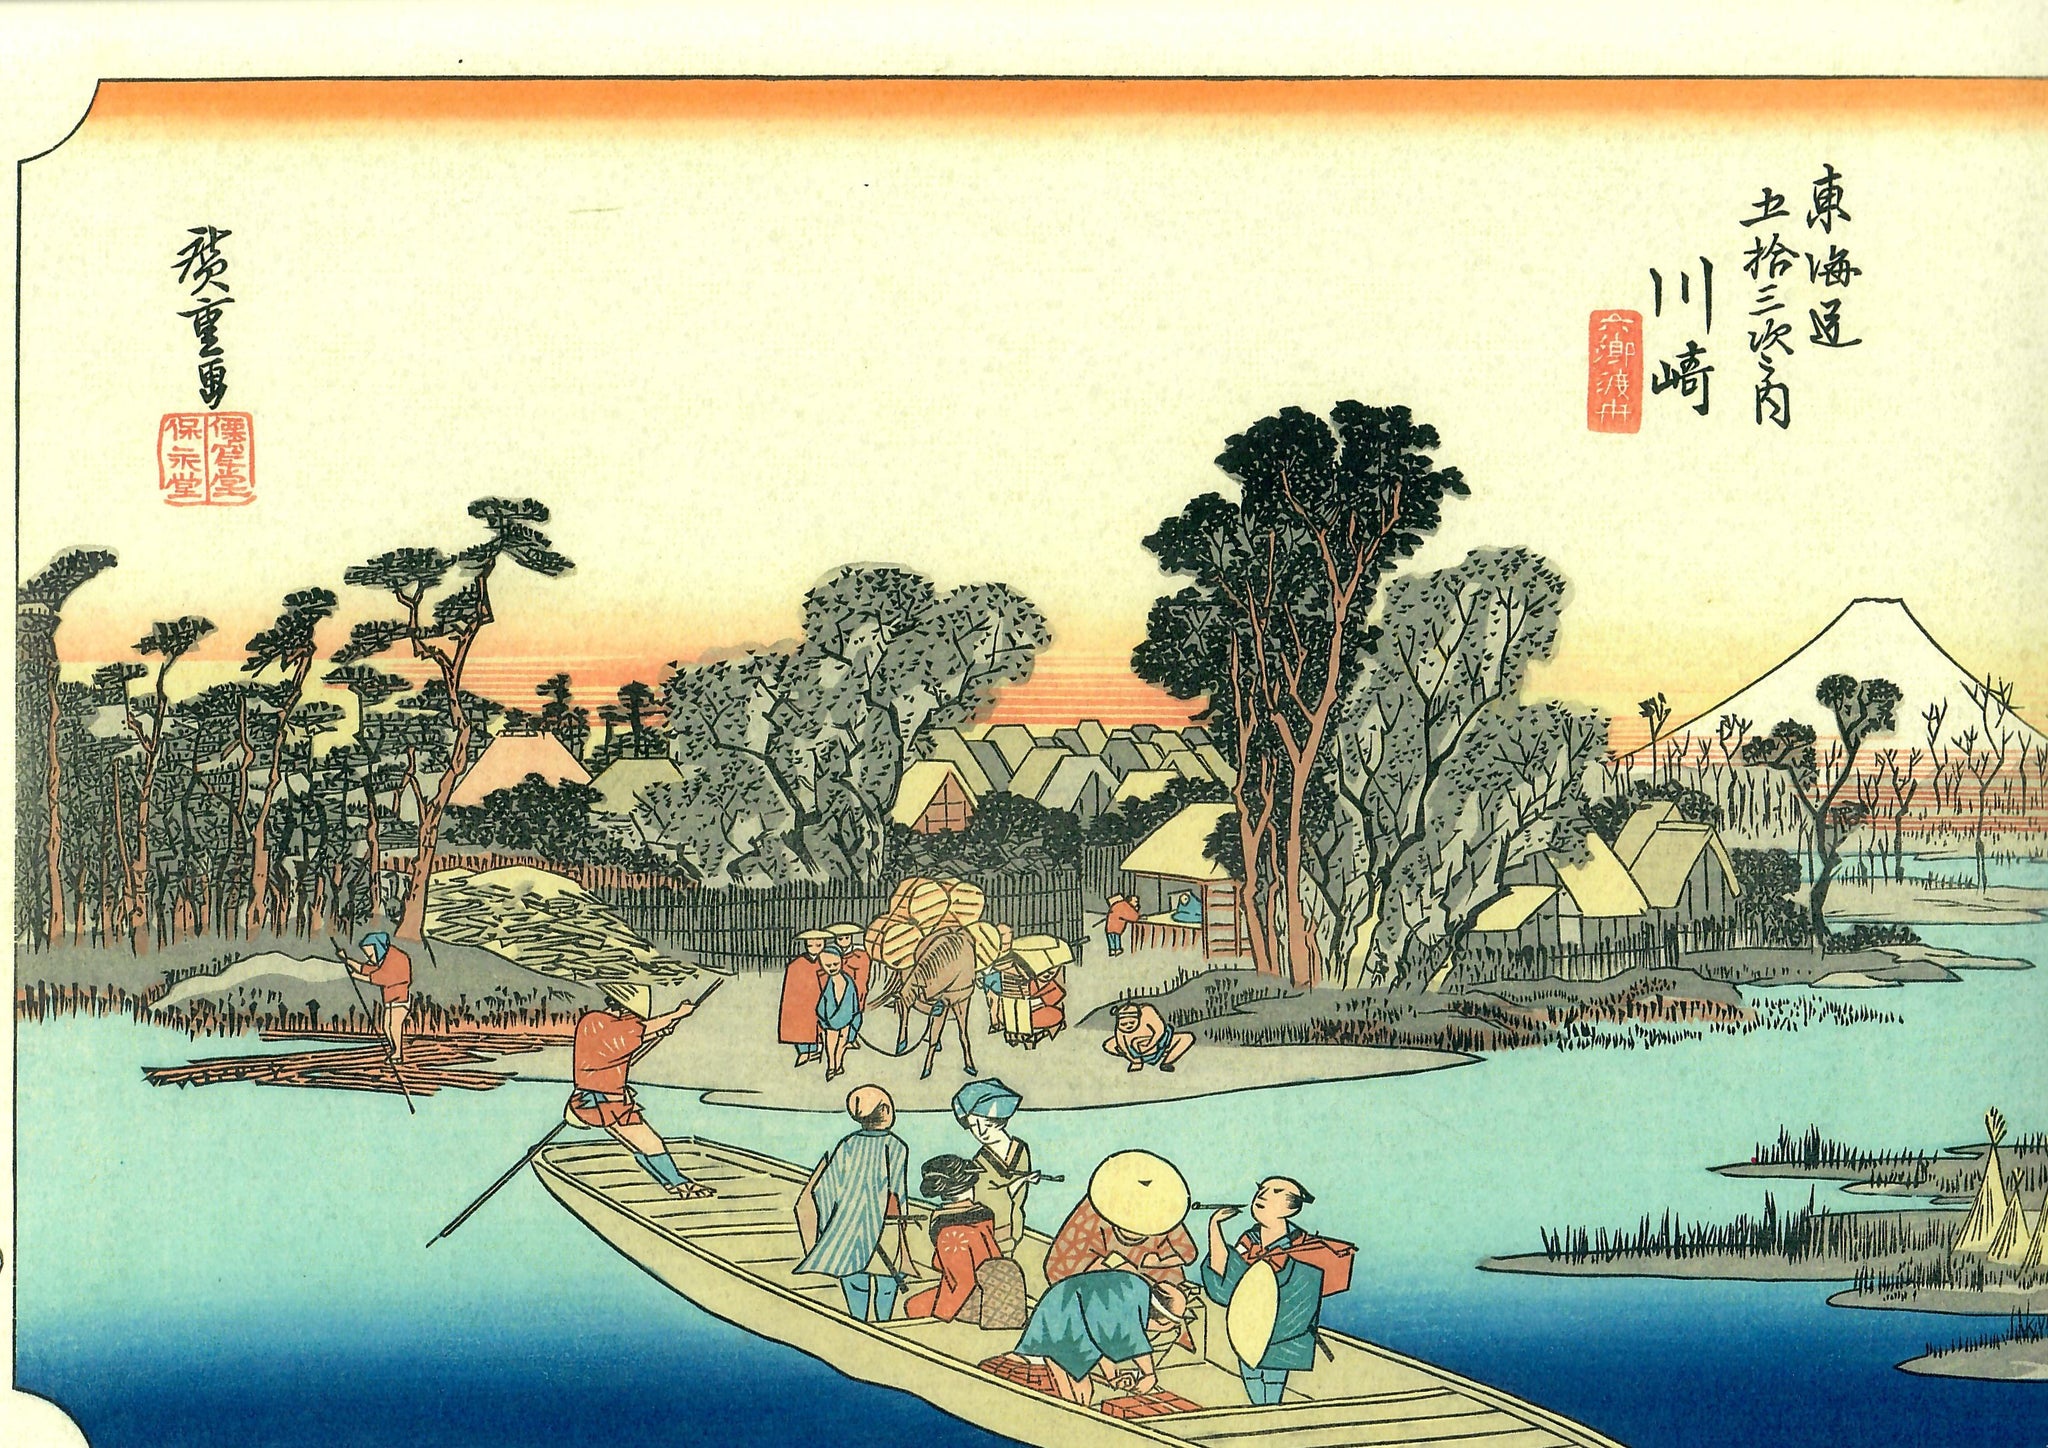 Hiroshige "Kawasaki"